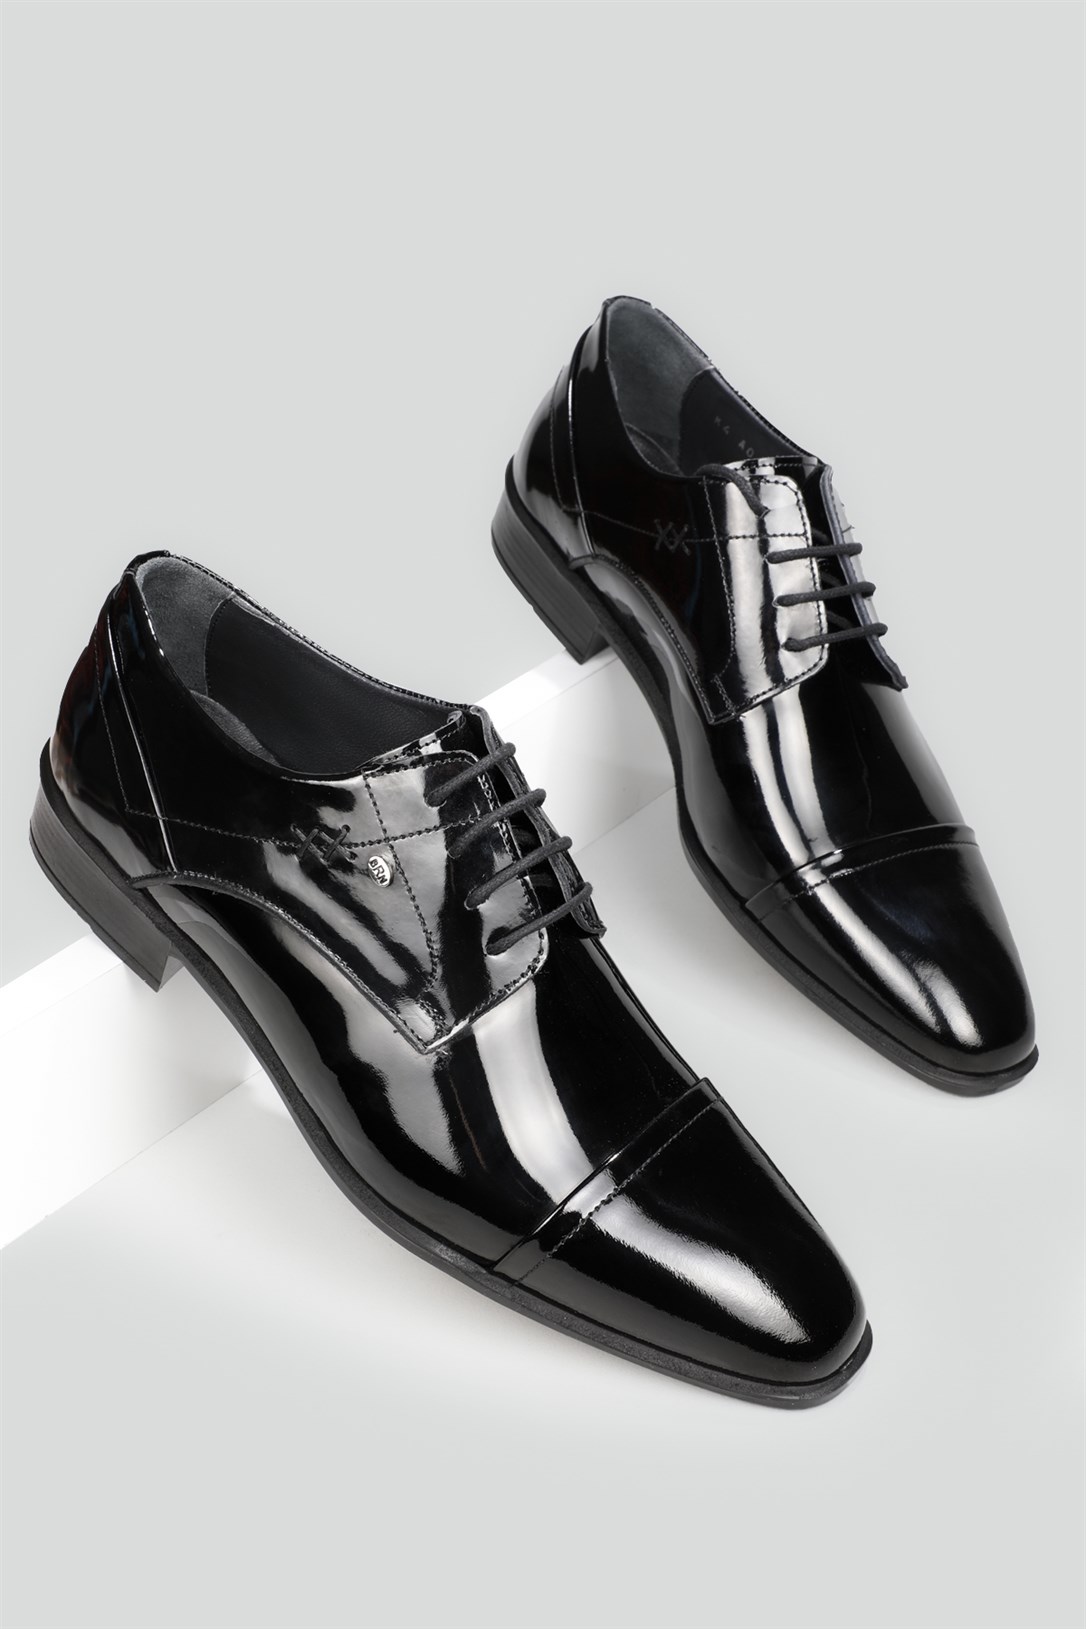 Berenni Klasik Deri Siyah Rugan Erkek Ayakkabı 272 | Ayakkabı City